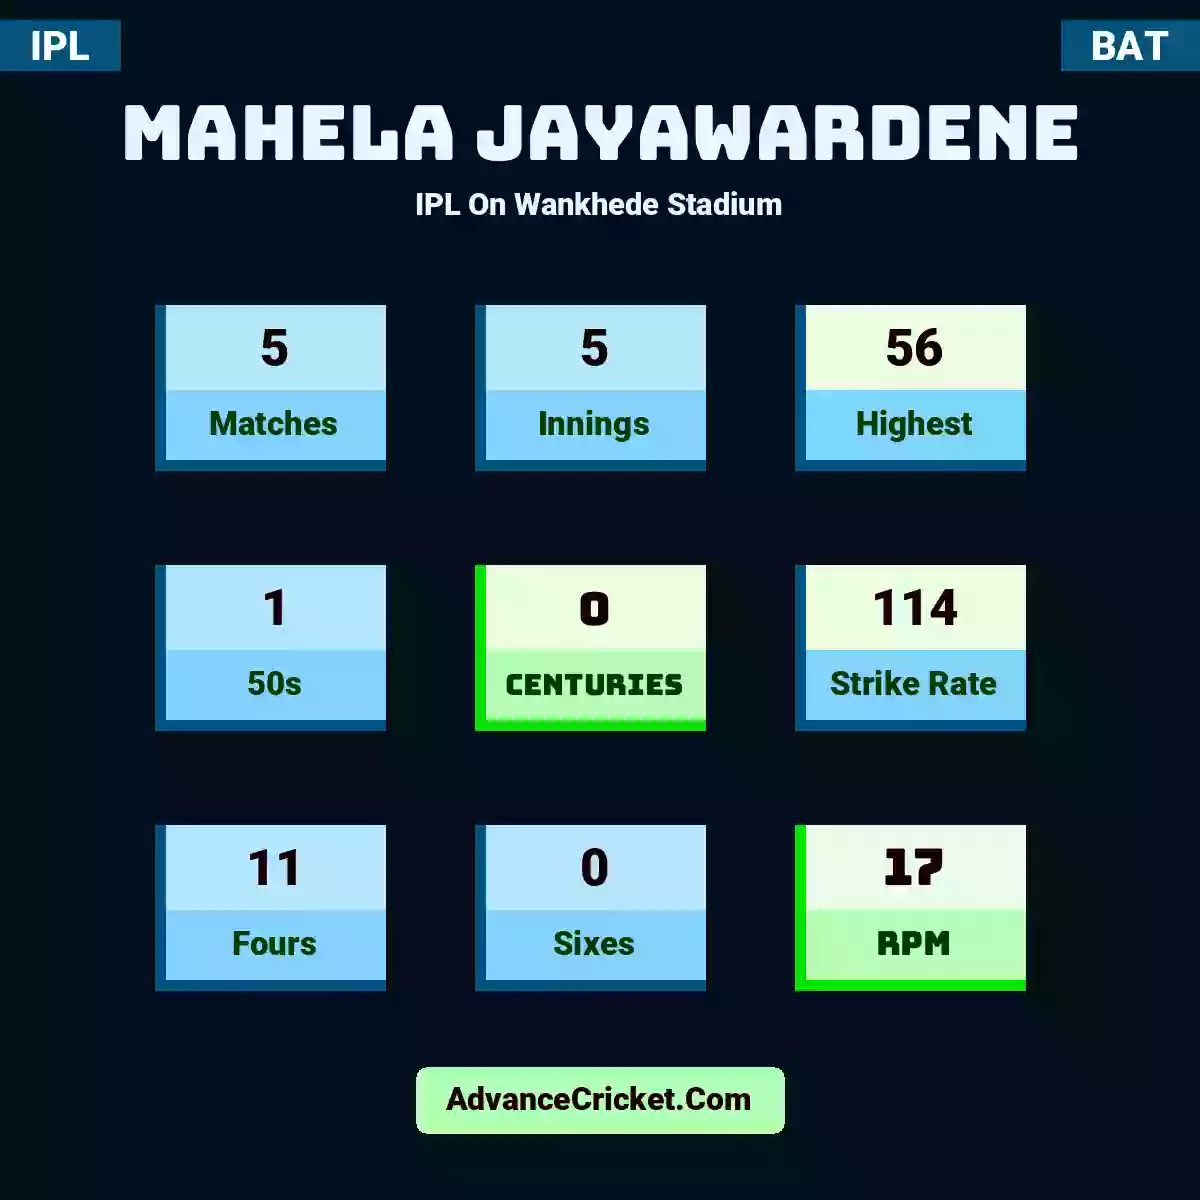 Mahela Jayawardene IPL  On Wankhede Stadium, Mahela Jayawardene played 5 matches, scored 56 runs as highest, 1 half-centuries, and 0 centuries, with a strike rate of 114. M.Jayawardene hit 11 fours and 0 sixes, with an RPM of 17.